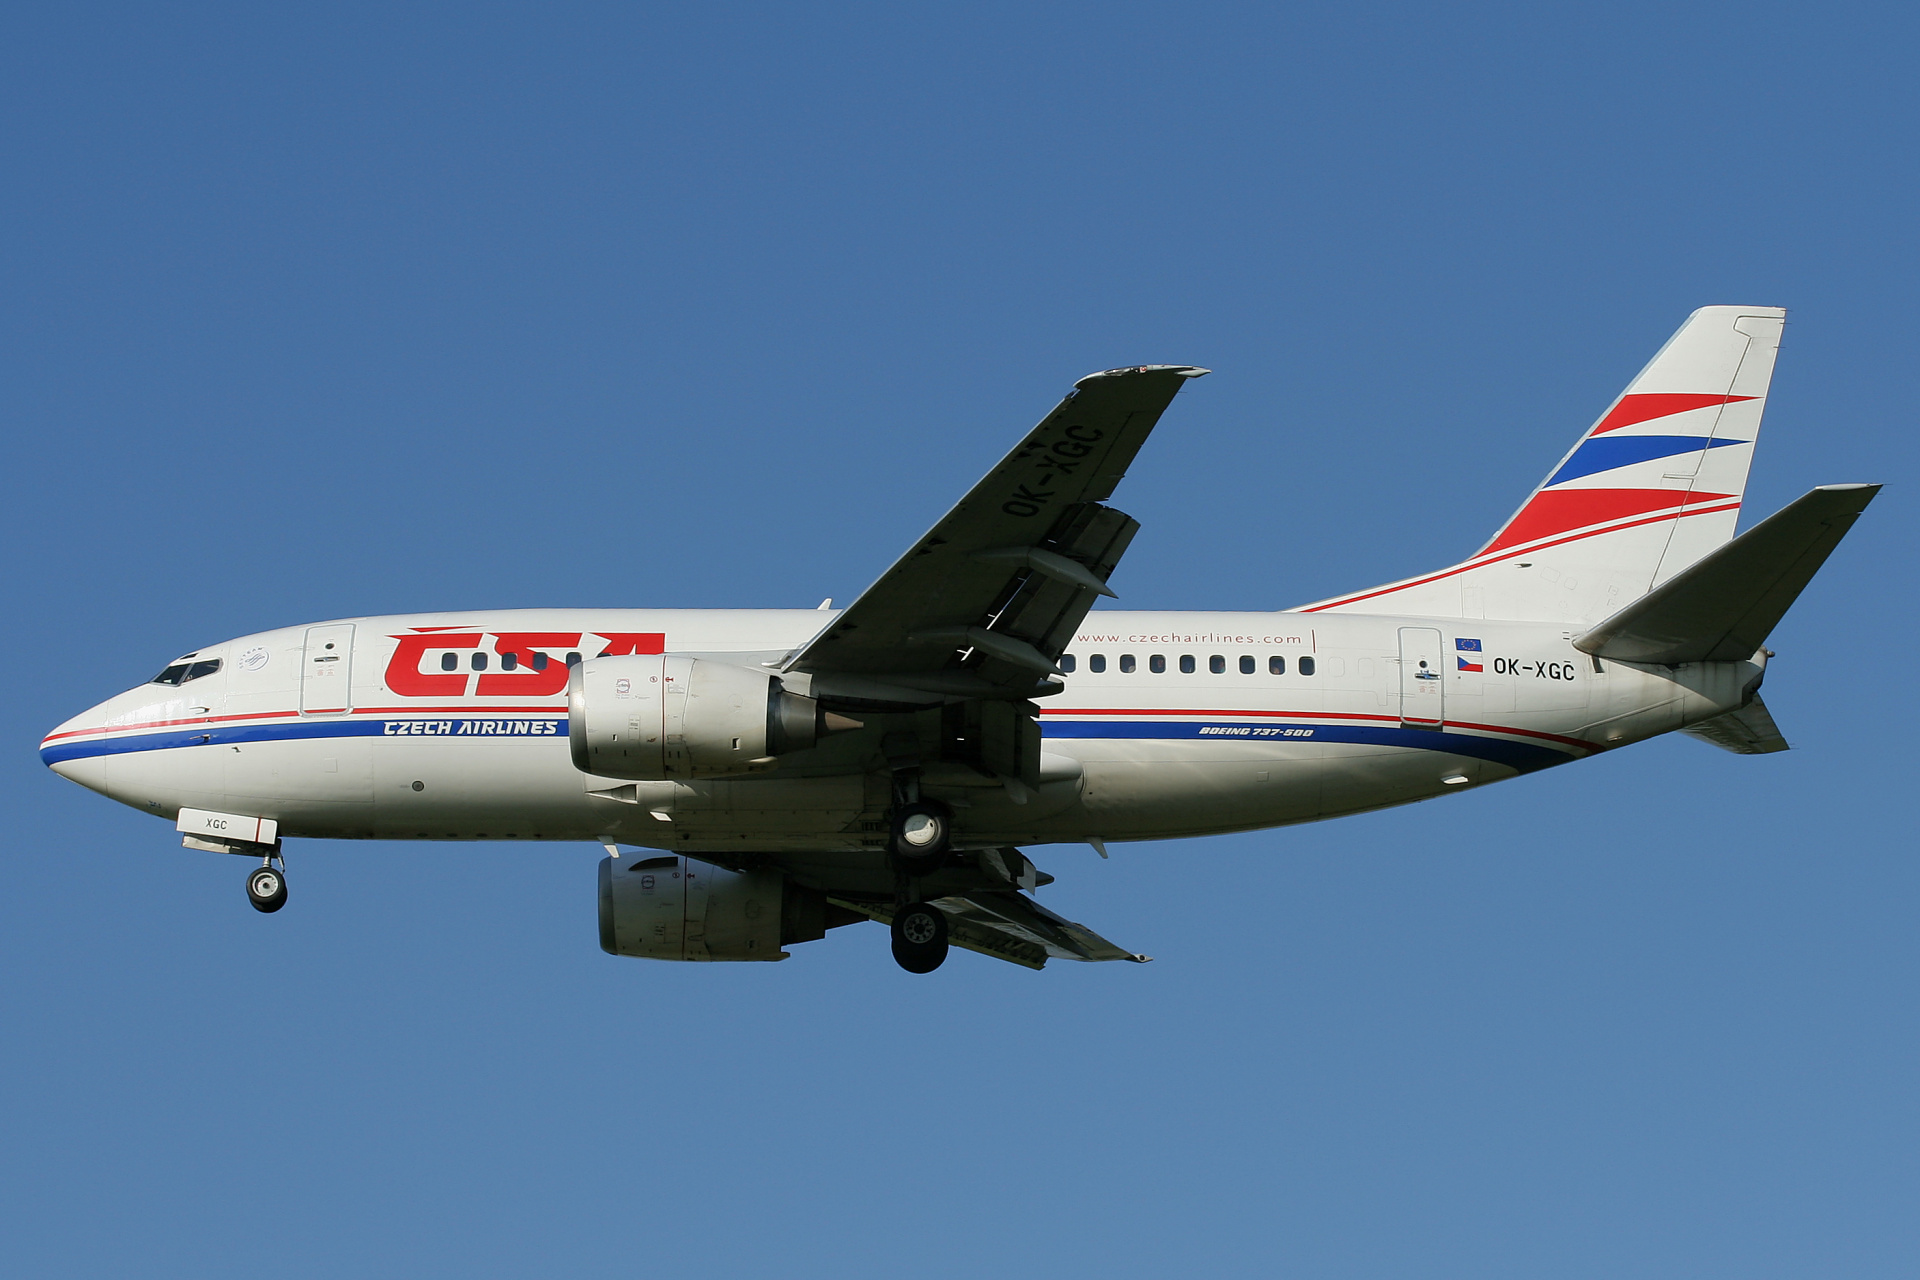 OK-XGC (Aircraft » EPWA Spotting » Boeing 737-500 » CSA Czech Airlines)